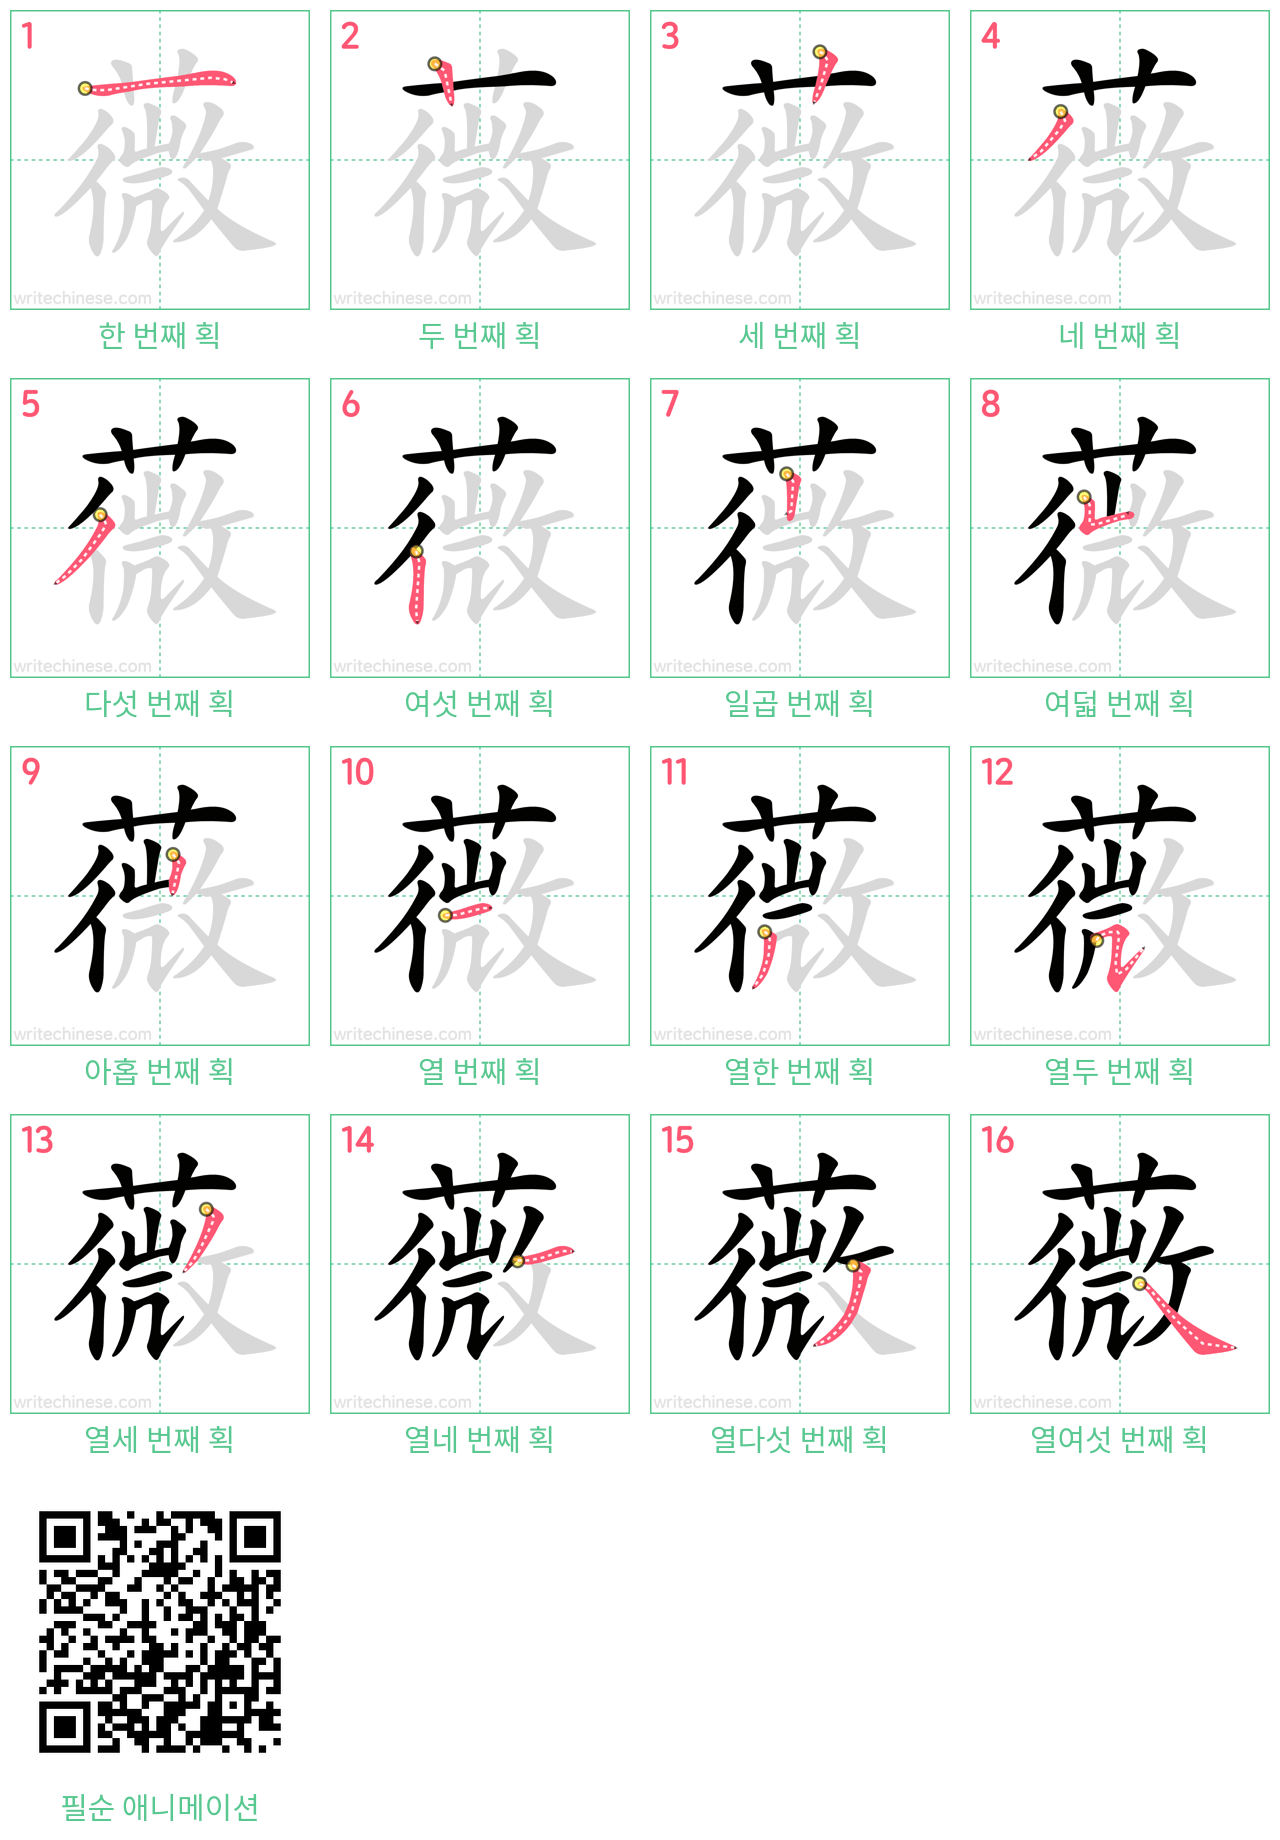 薇 step-by-step stroke order diagrams